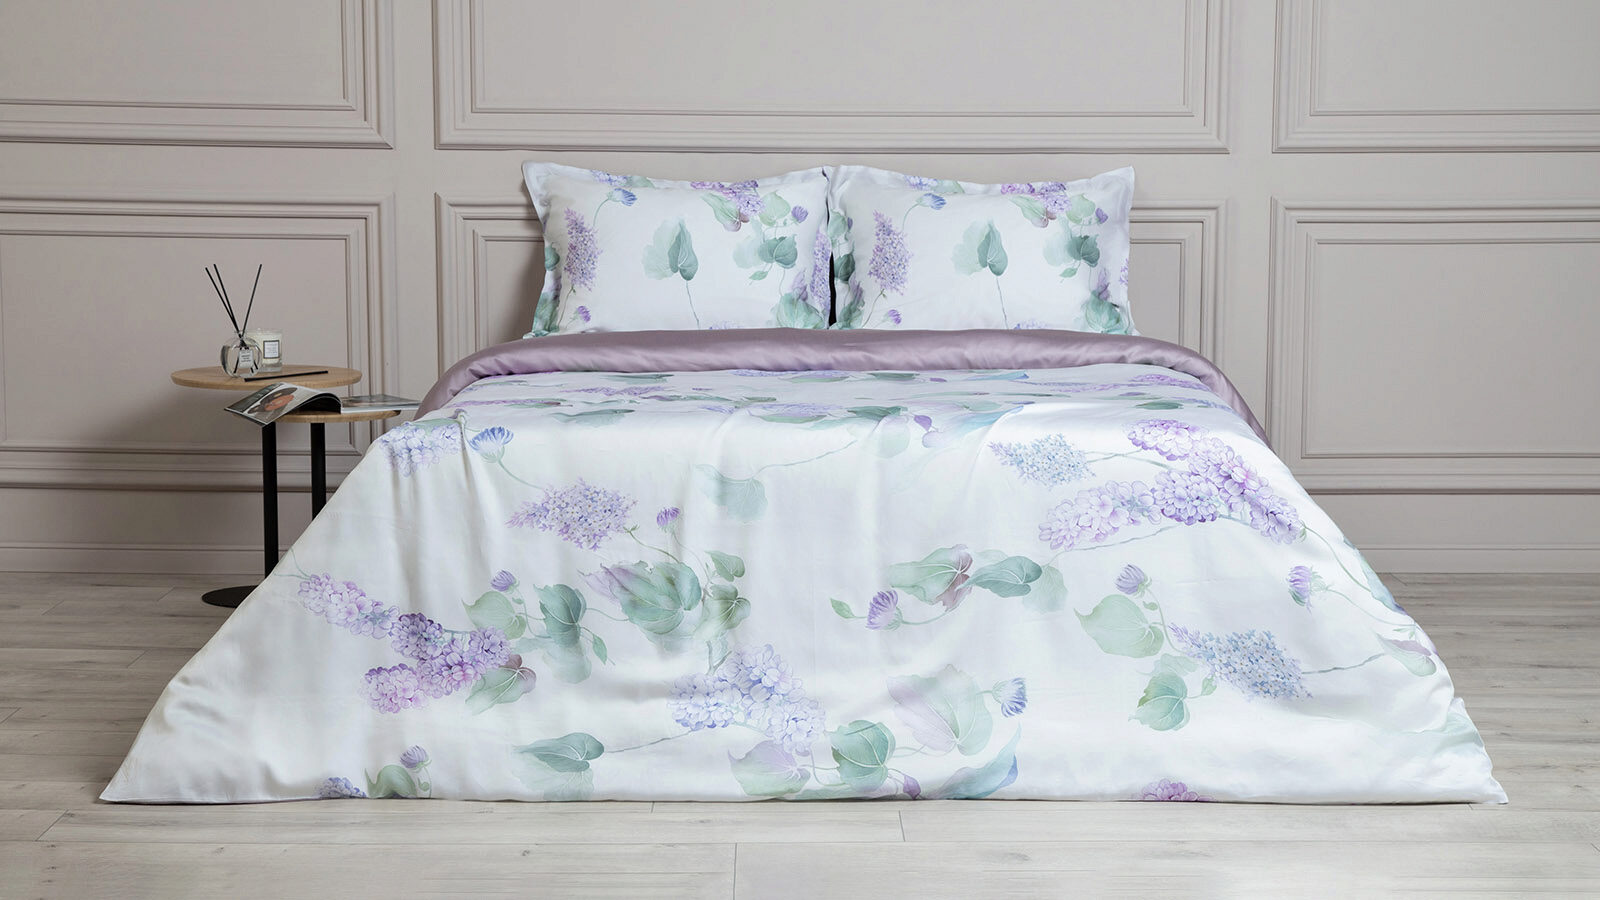 Комплект постельного белья Trend Tencel Lilac комплект одеяло beat 2 подушка sky комплект постельного белья comfort cotton светло серый